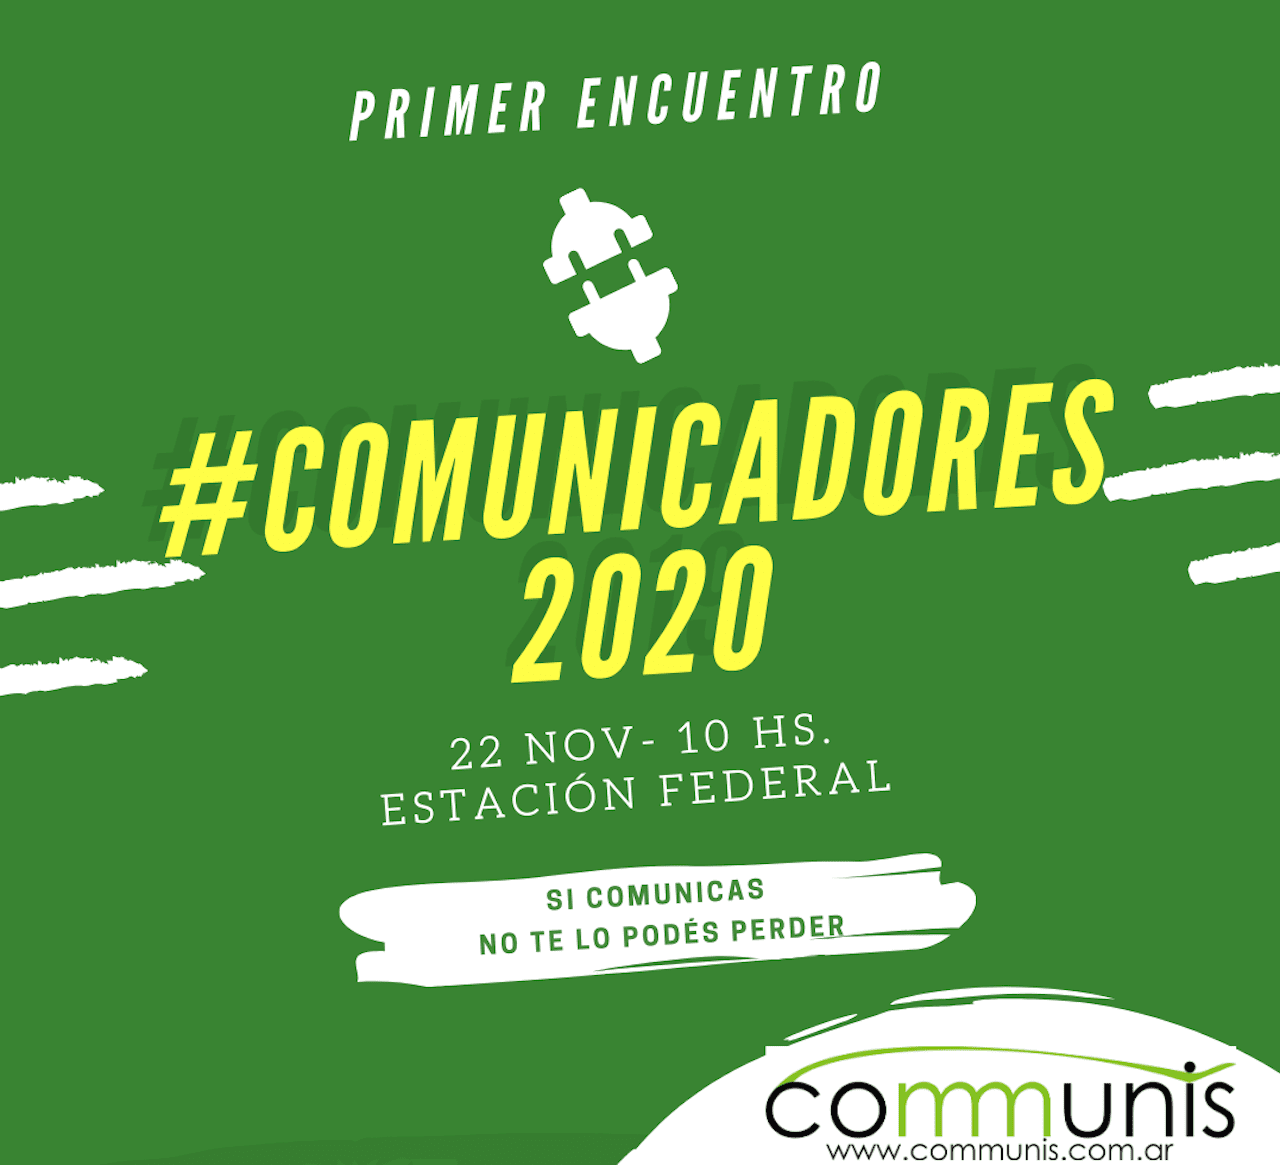 Comunicadores2020 es un encuentro entre comunicadores de distintos ámbitos para compartir los desafíos laborales futuros con las herramientas adecuadas